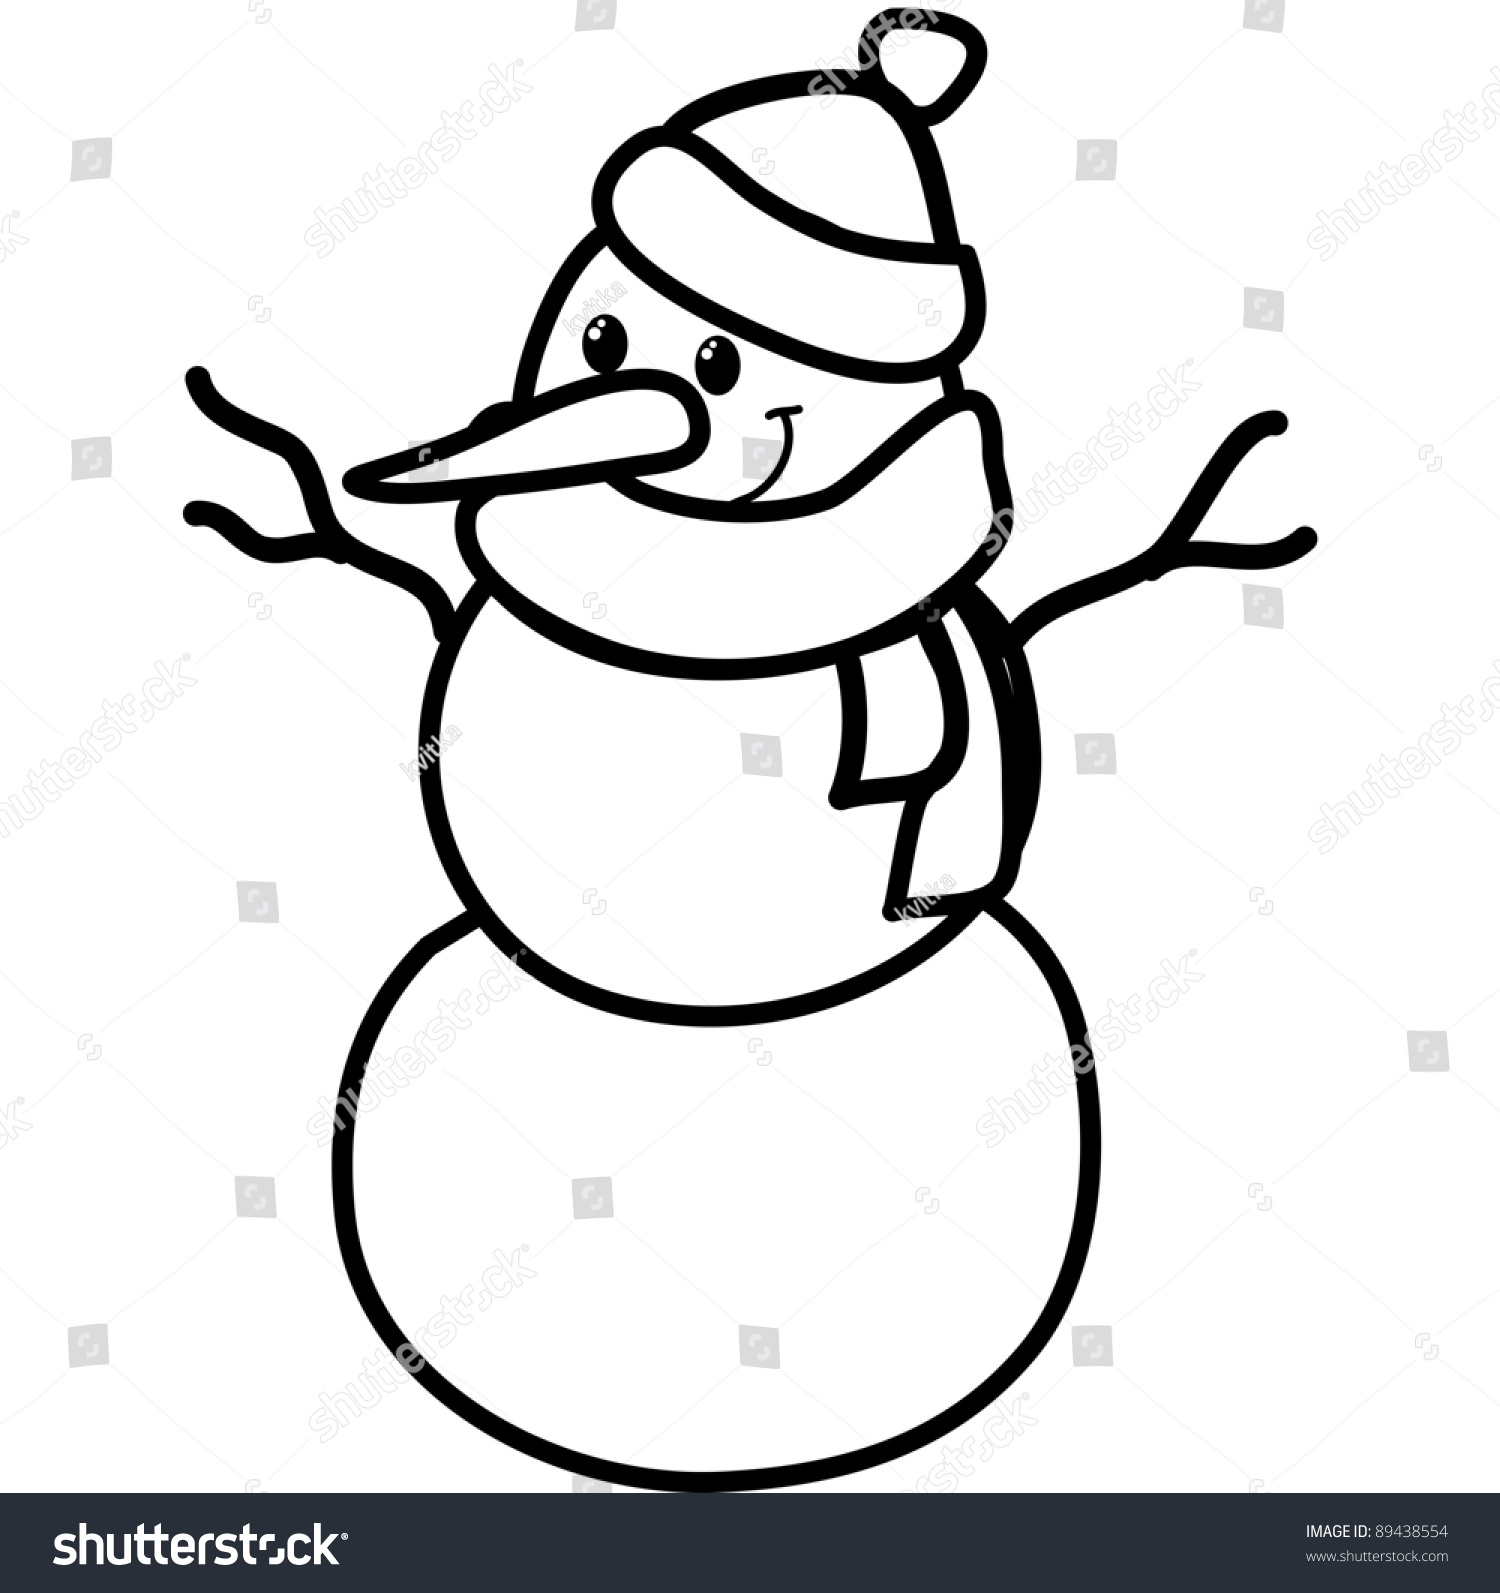 Cute Little Snowman Cartoon Line Art Stock Vector 89438554 - Shutterstock